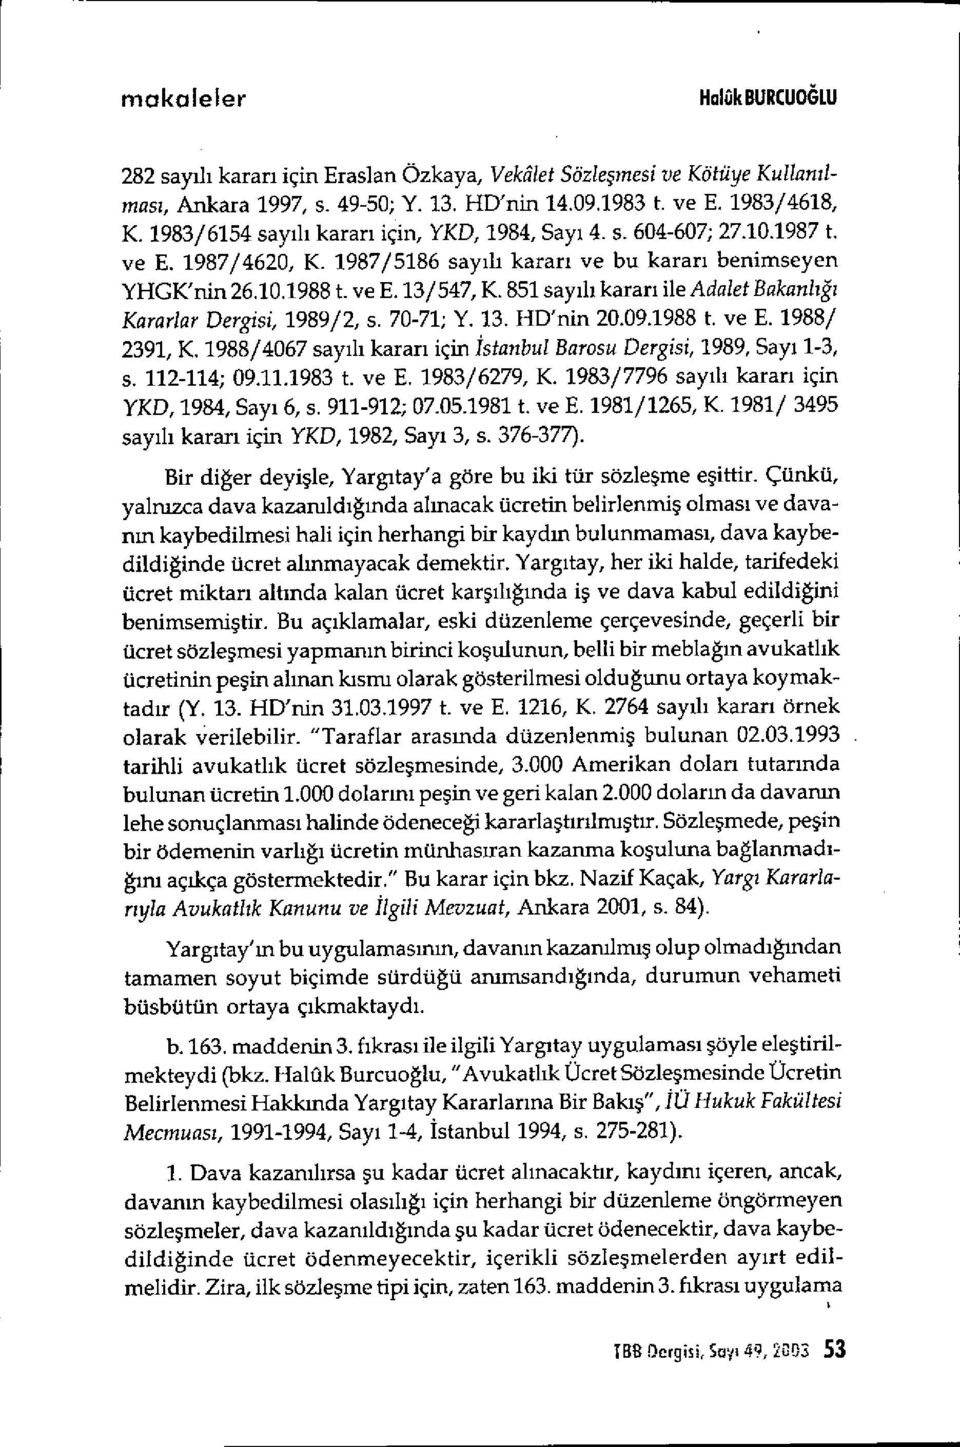 851 say ıl ı kararı ile Adalet Bakanl ığı Kararlar Dergisi, 1989/2, s. 70-71; Y. 13. HD'nin 20.09.1988 t. ve E. 1988/ 2391, K.